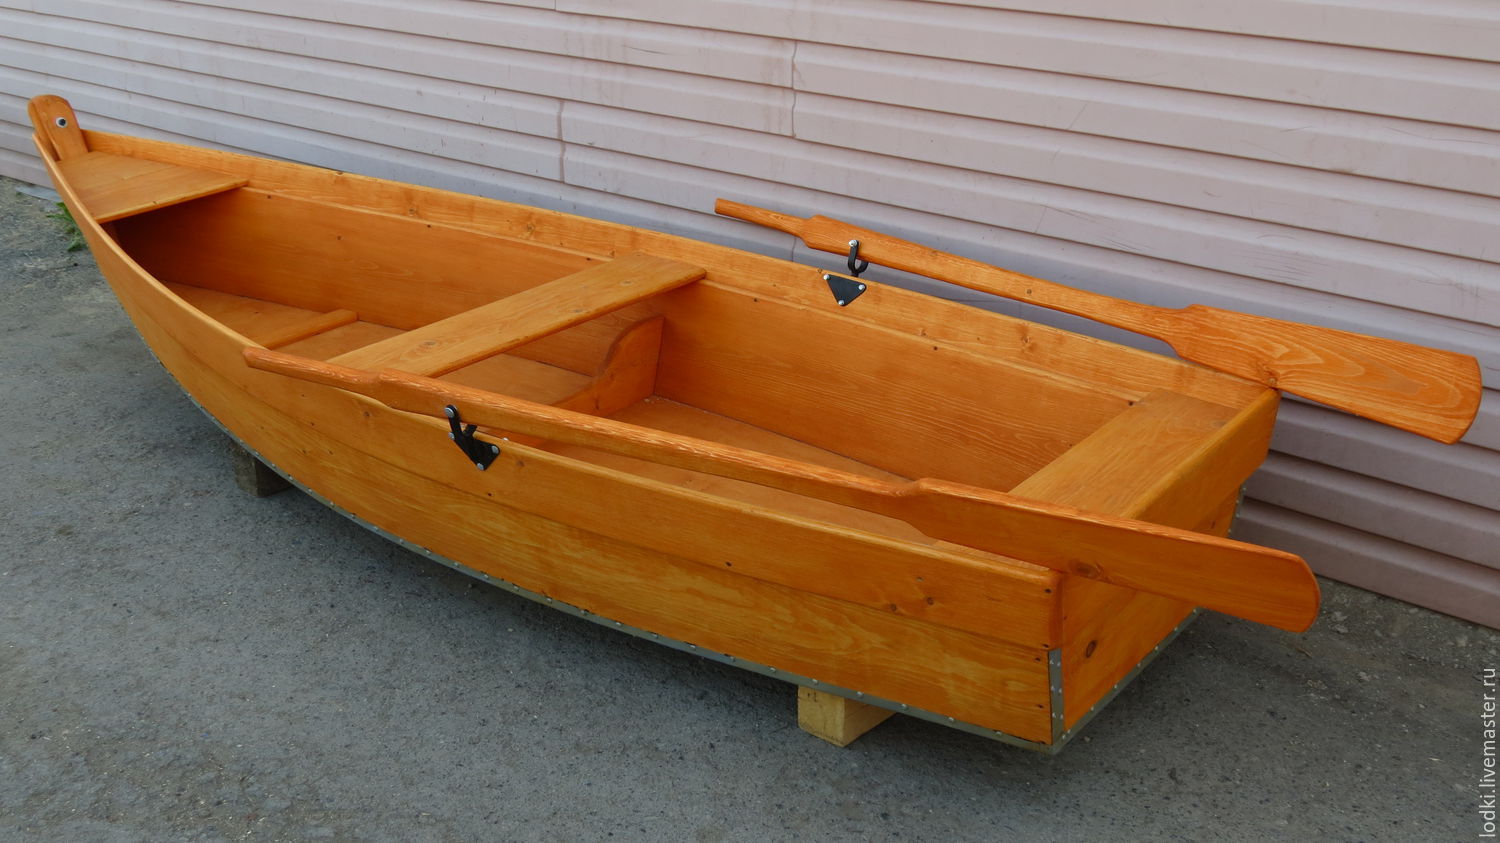 Плоскодонка купить. Лодка Сириус 6 1,6 плоскодонка. Лодка плоскодонка 3м на 1,5м. Лодка деревянная. Деревянная лодка плоскодонка.